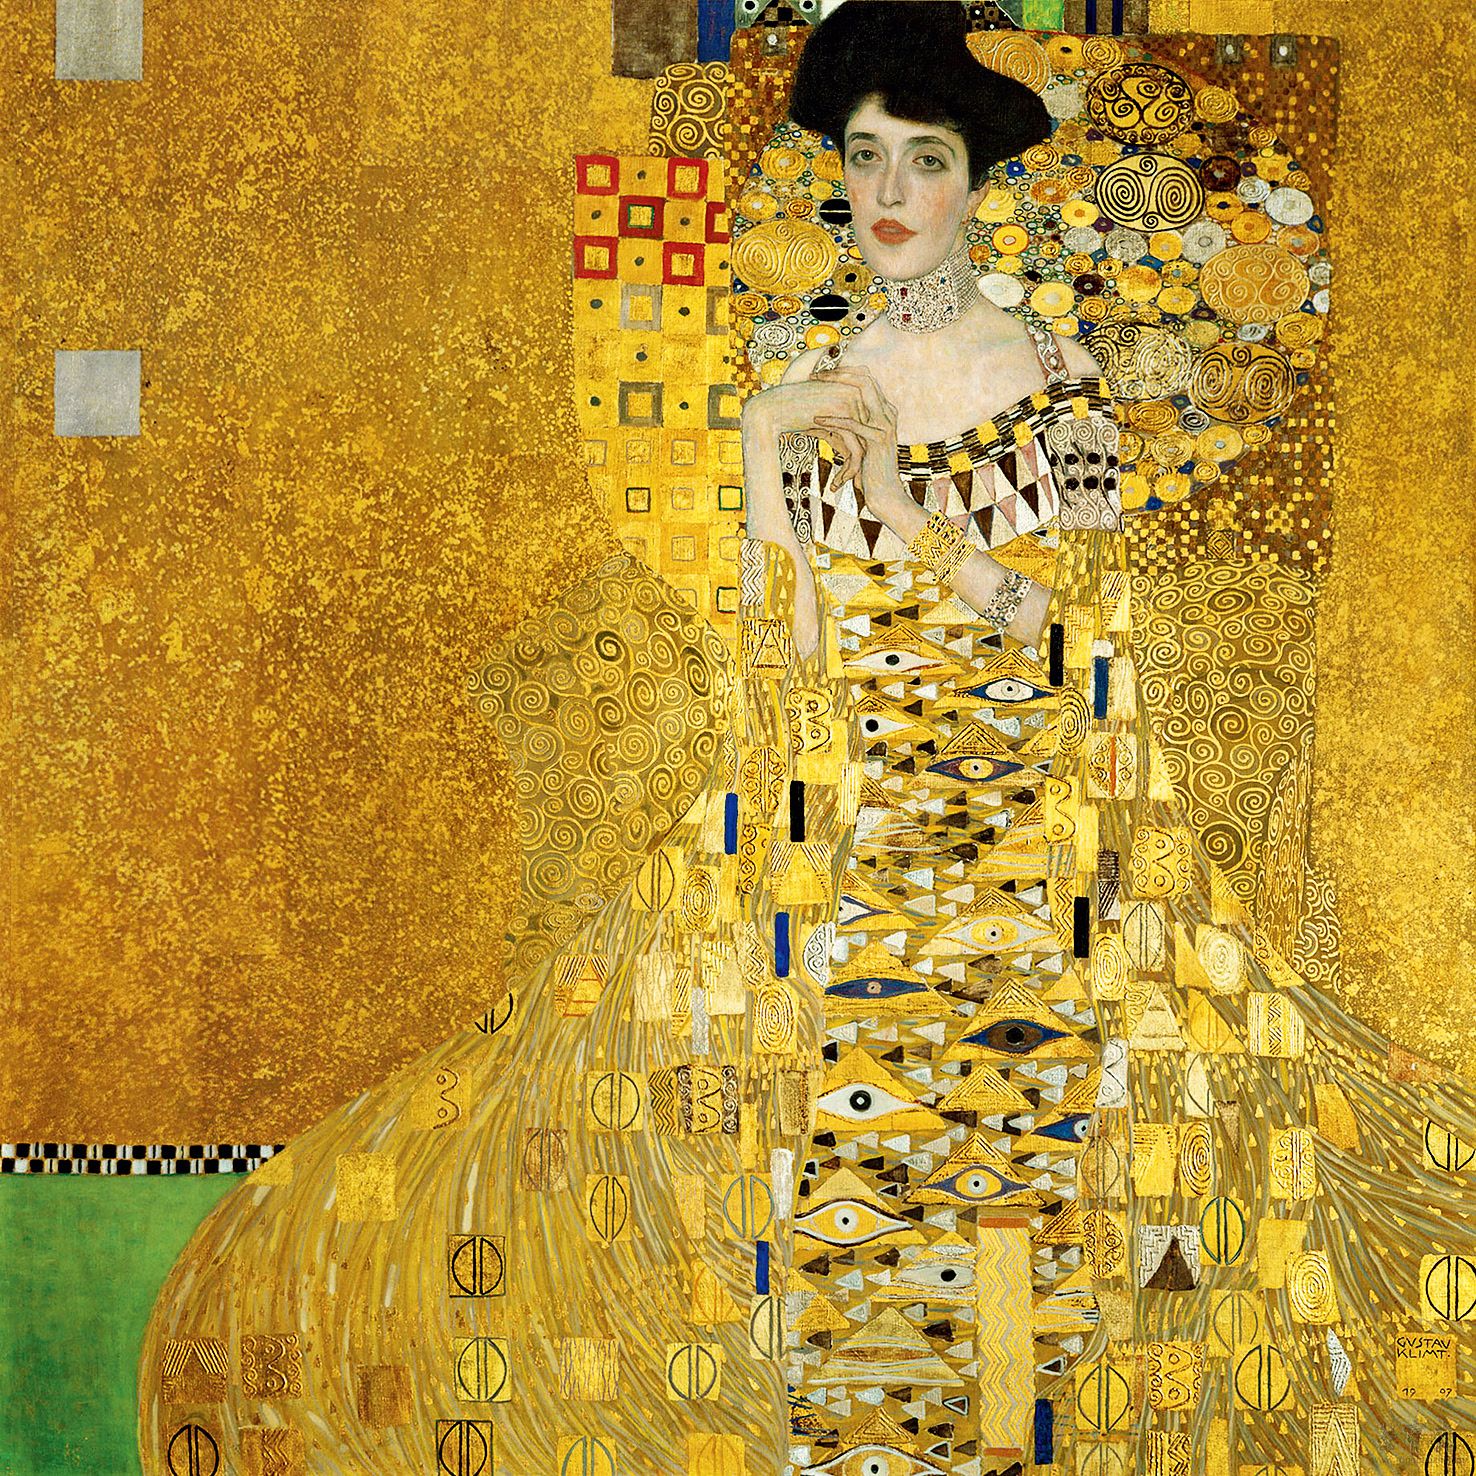 奥地利 克里姆特 阿德勒·布洛赫·鲍尔肖像 油彩金彩 138cm×138cm 1907